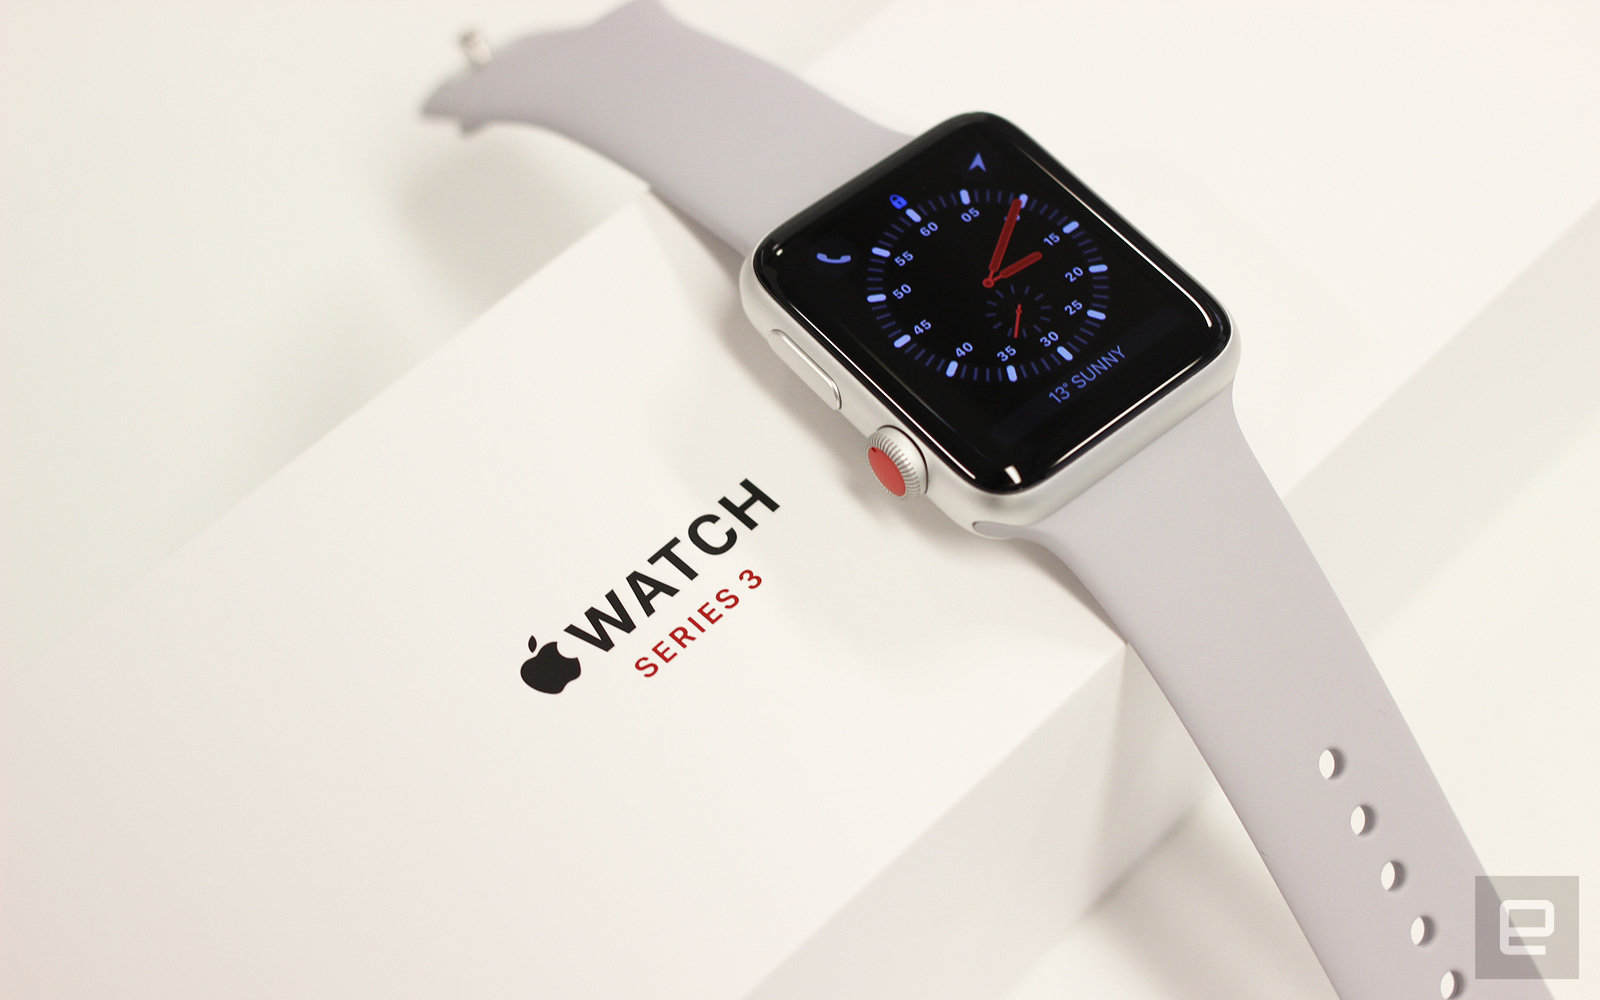 Apple Watchがサードパーティー製文字盤に対応か コードのなかに対応を示唆するコメント発見 Engadget 日本版